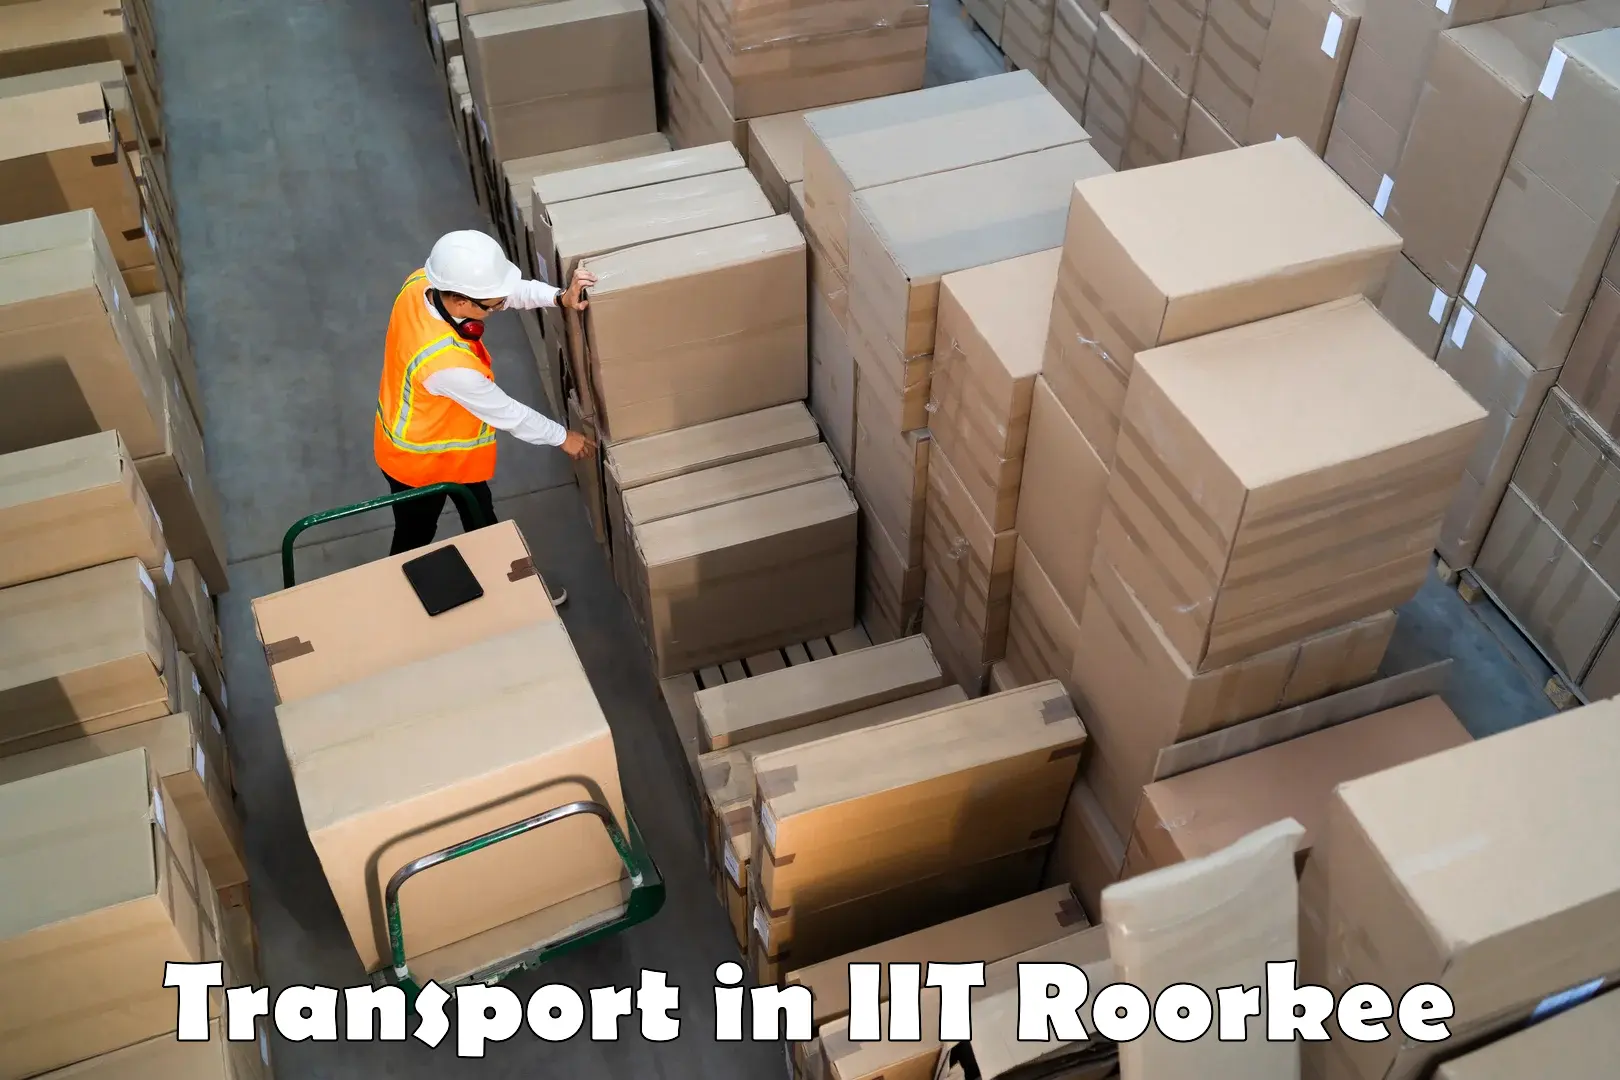 Truck transport companies in India in IIT Roorkee